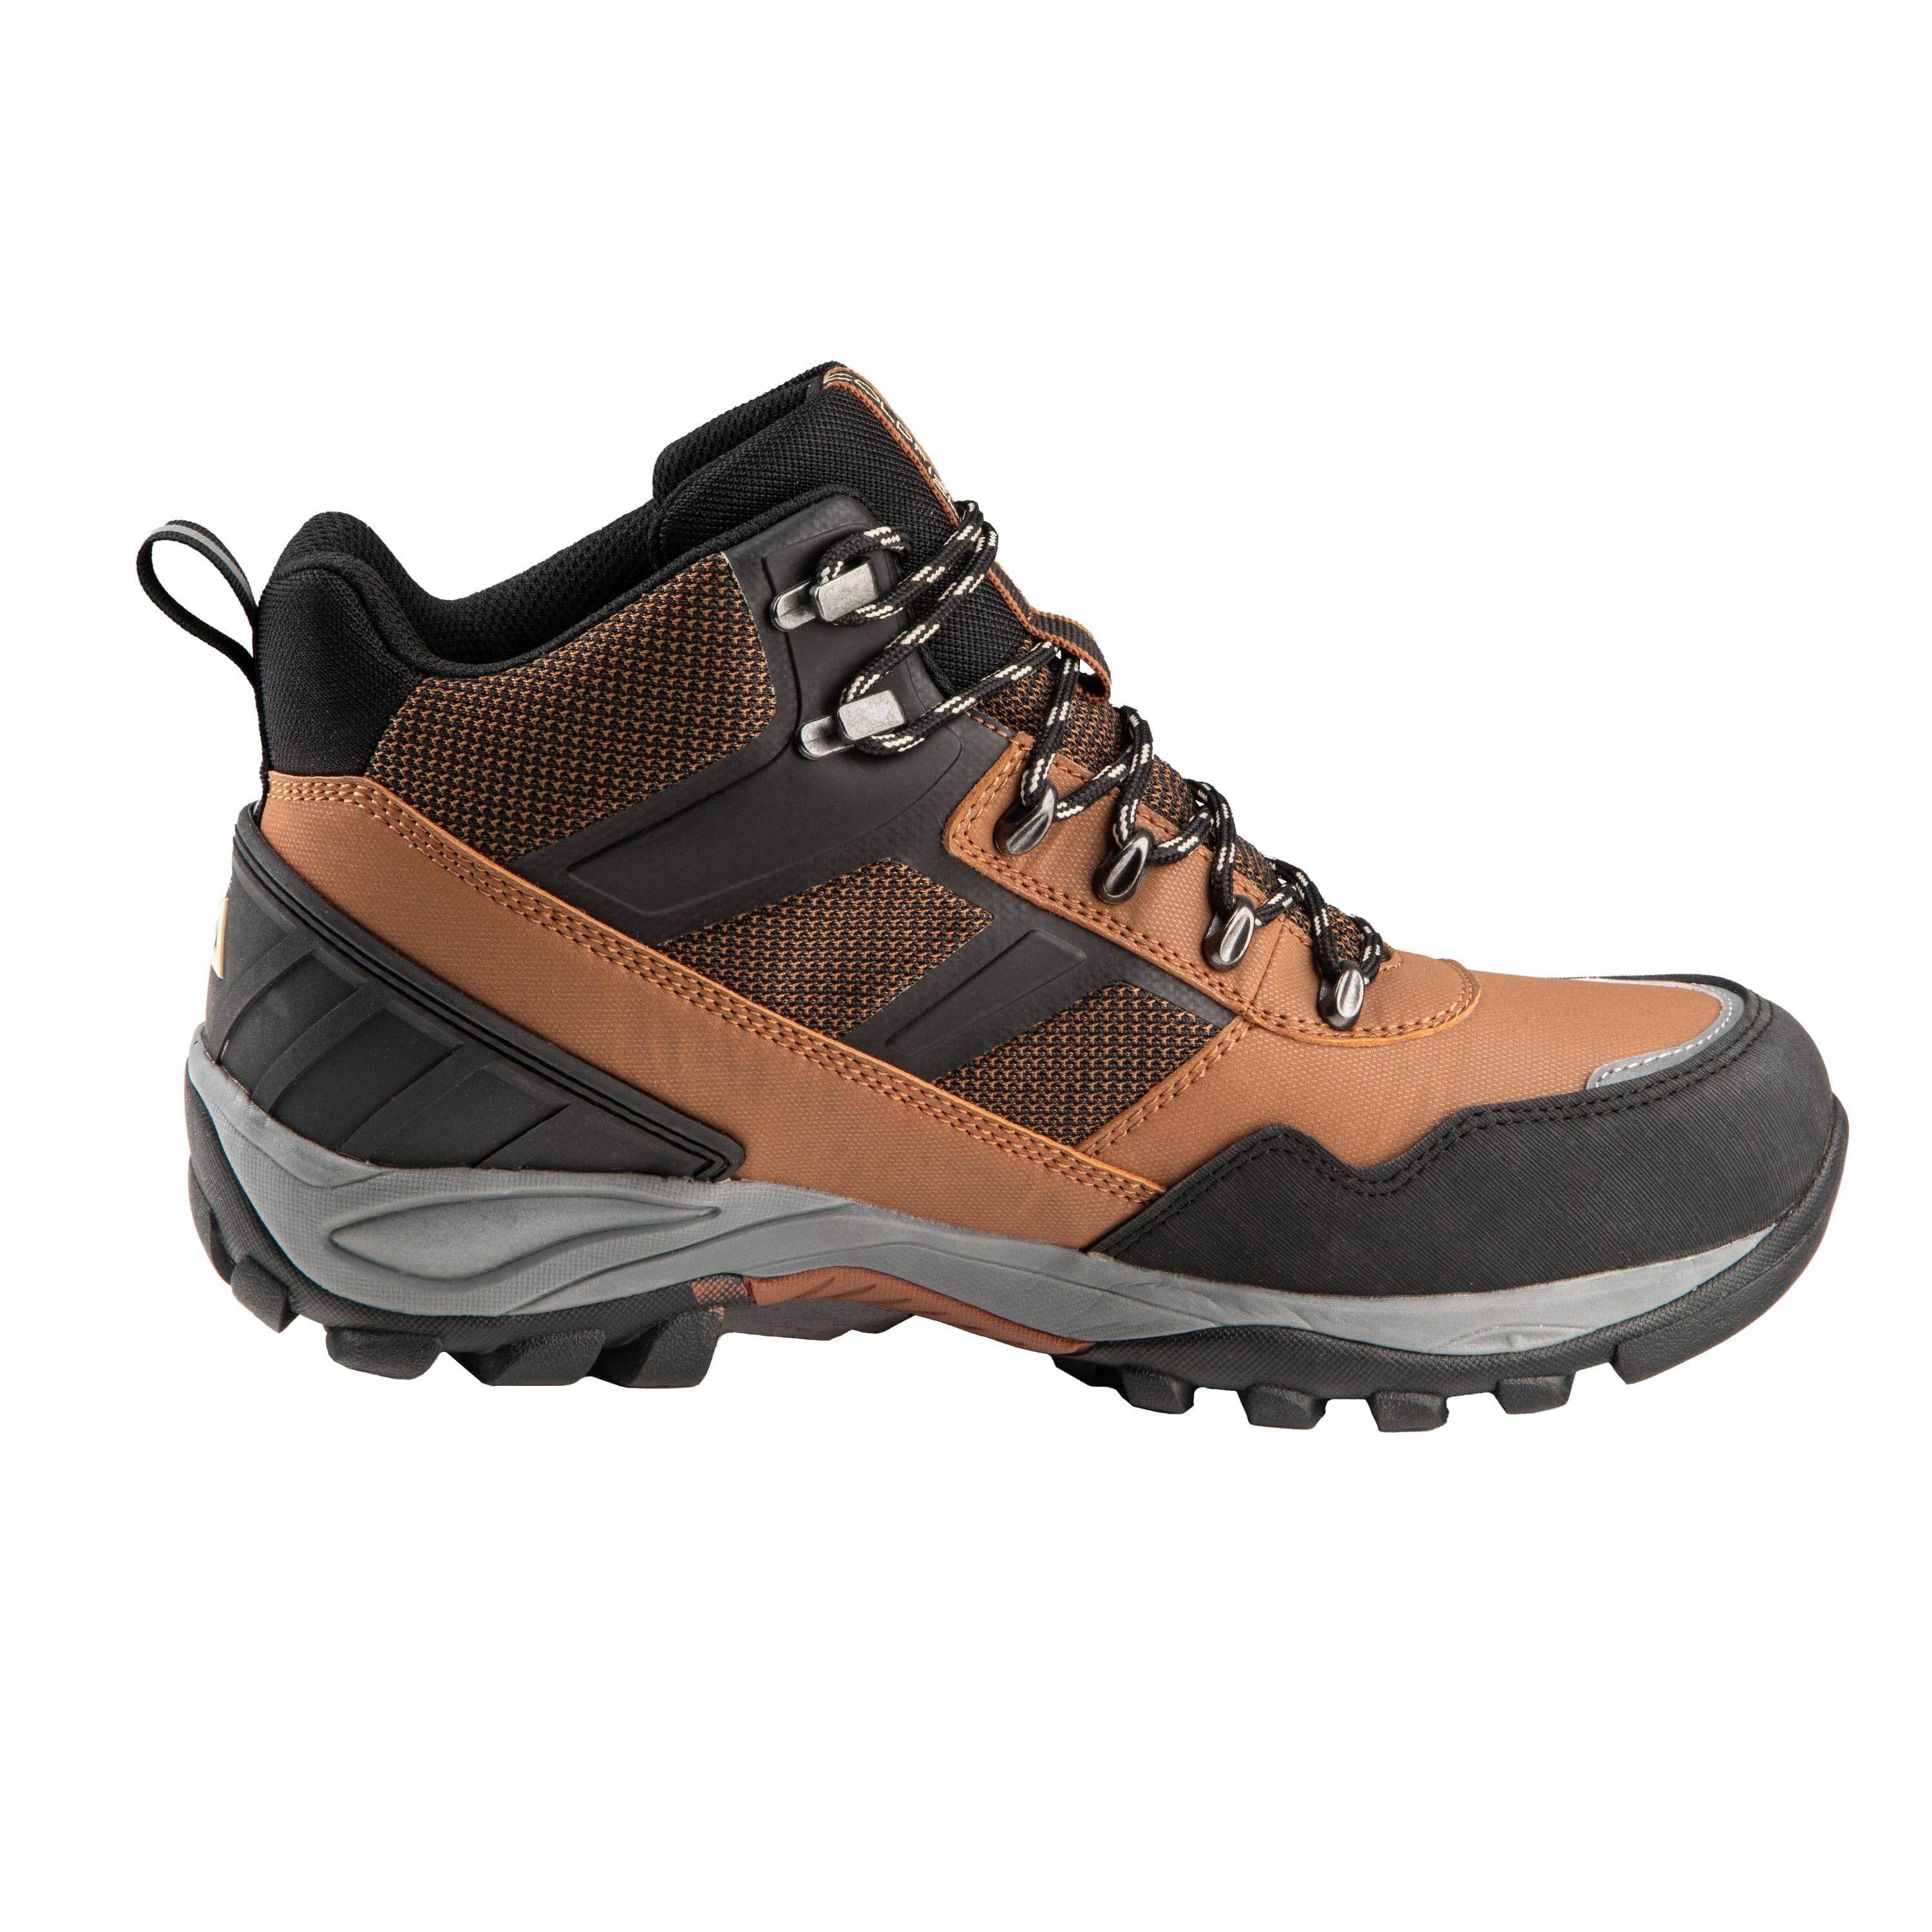 "Sierra" Hiking boots - Men’s